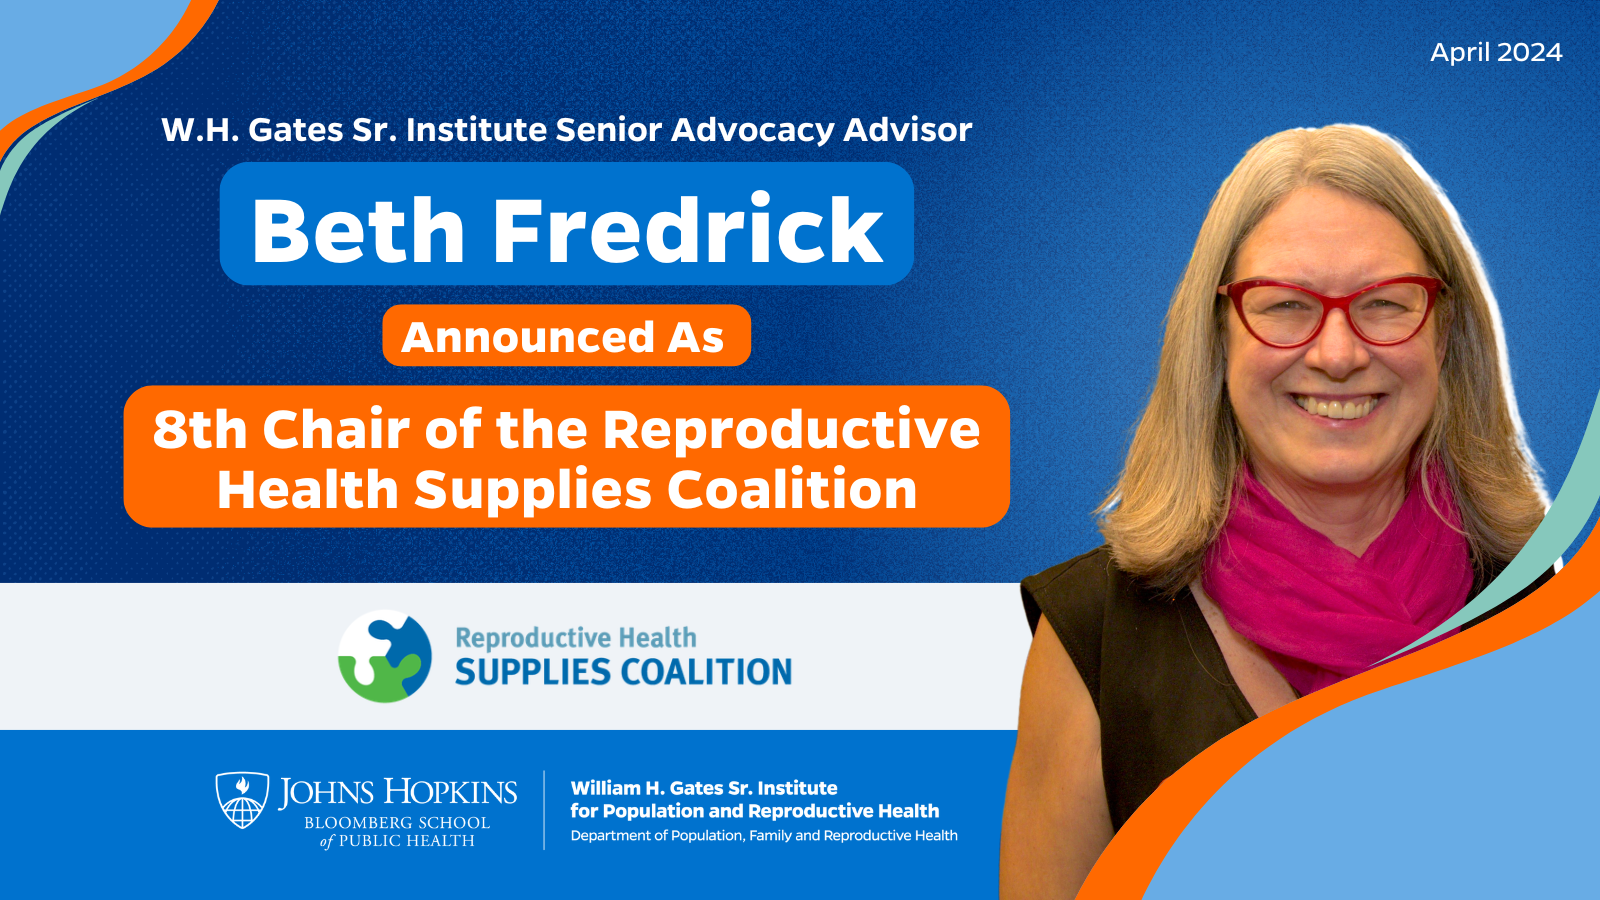 Beth Fredrick, Asesora Principal de Defensa de WHGI, es anunciada como la 8ª presidenta de la Coalición de Suministros de Salud Reproductiva